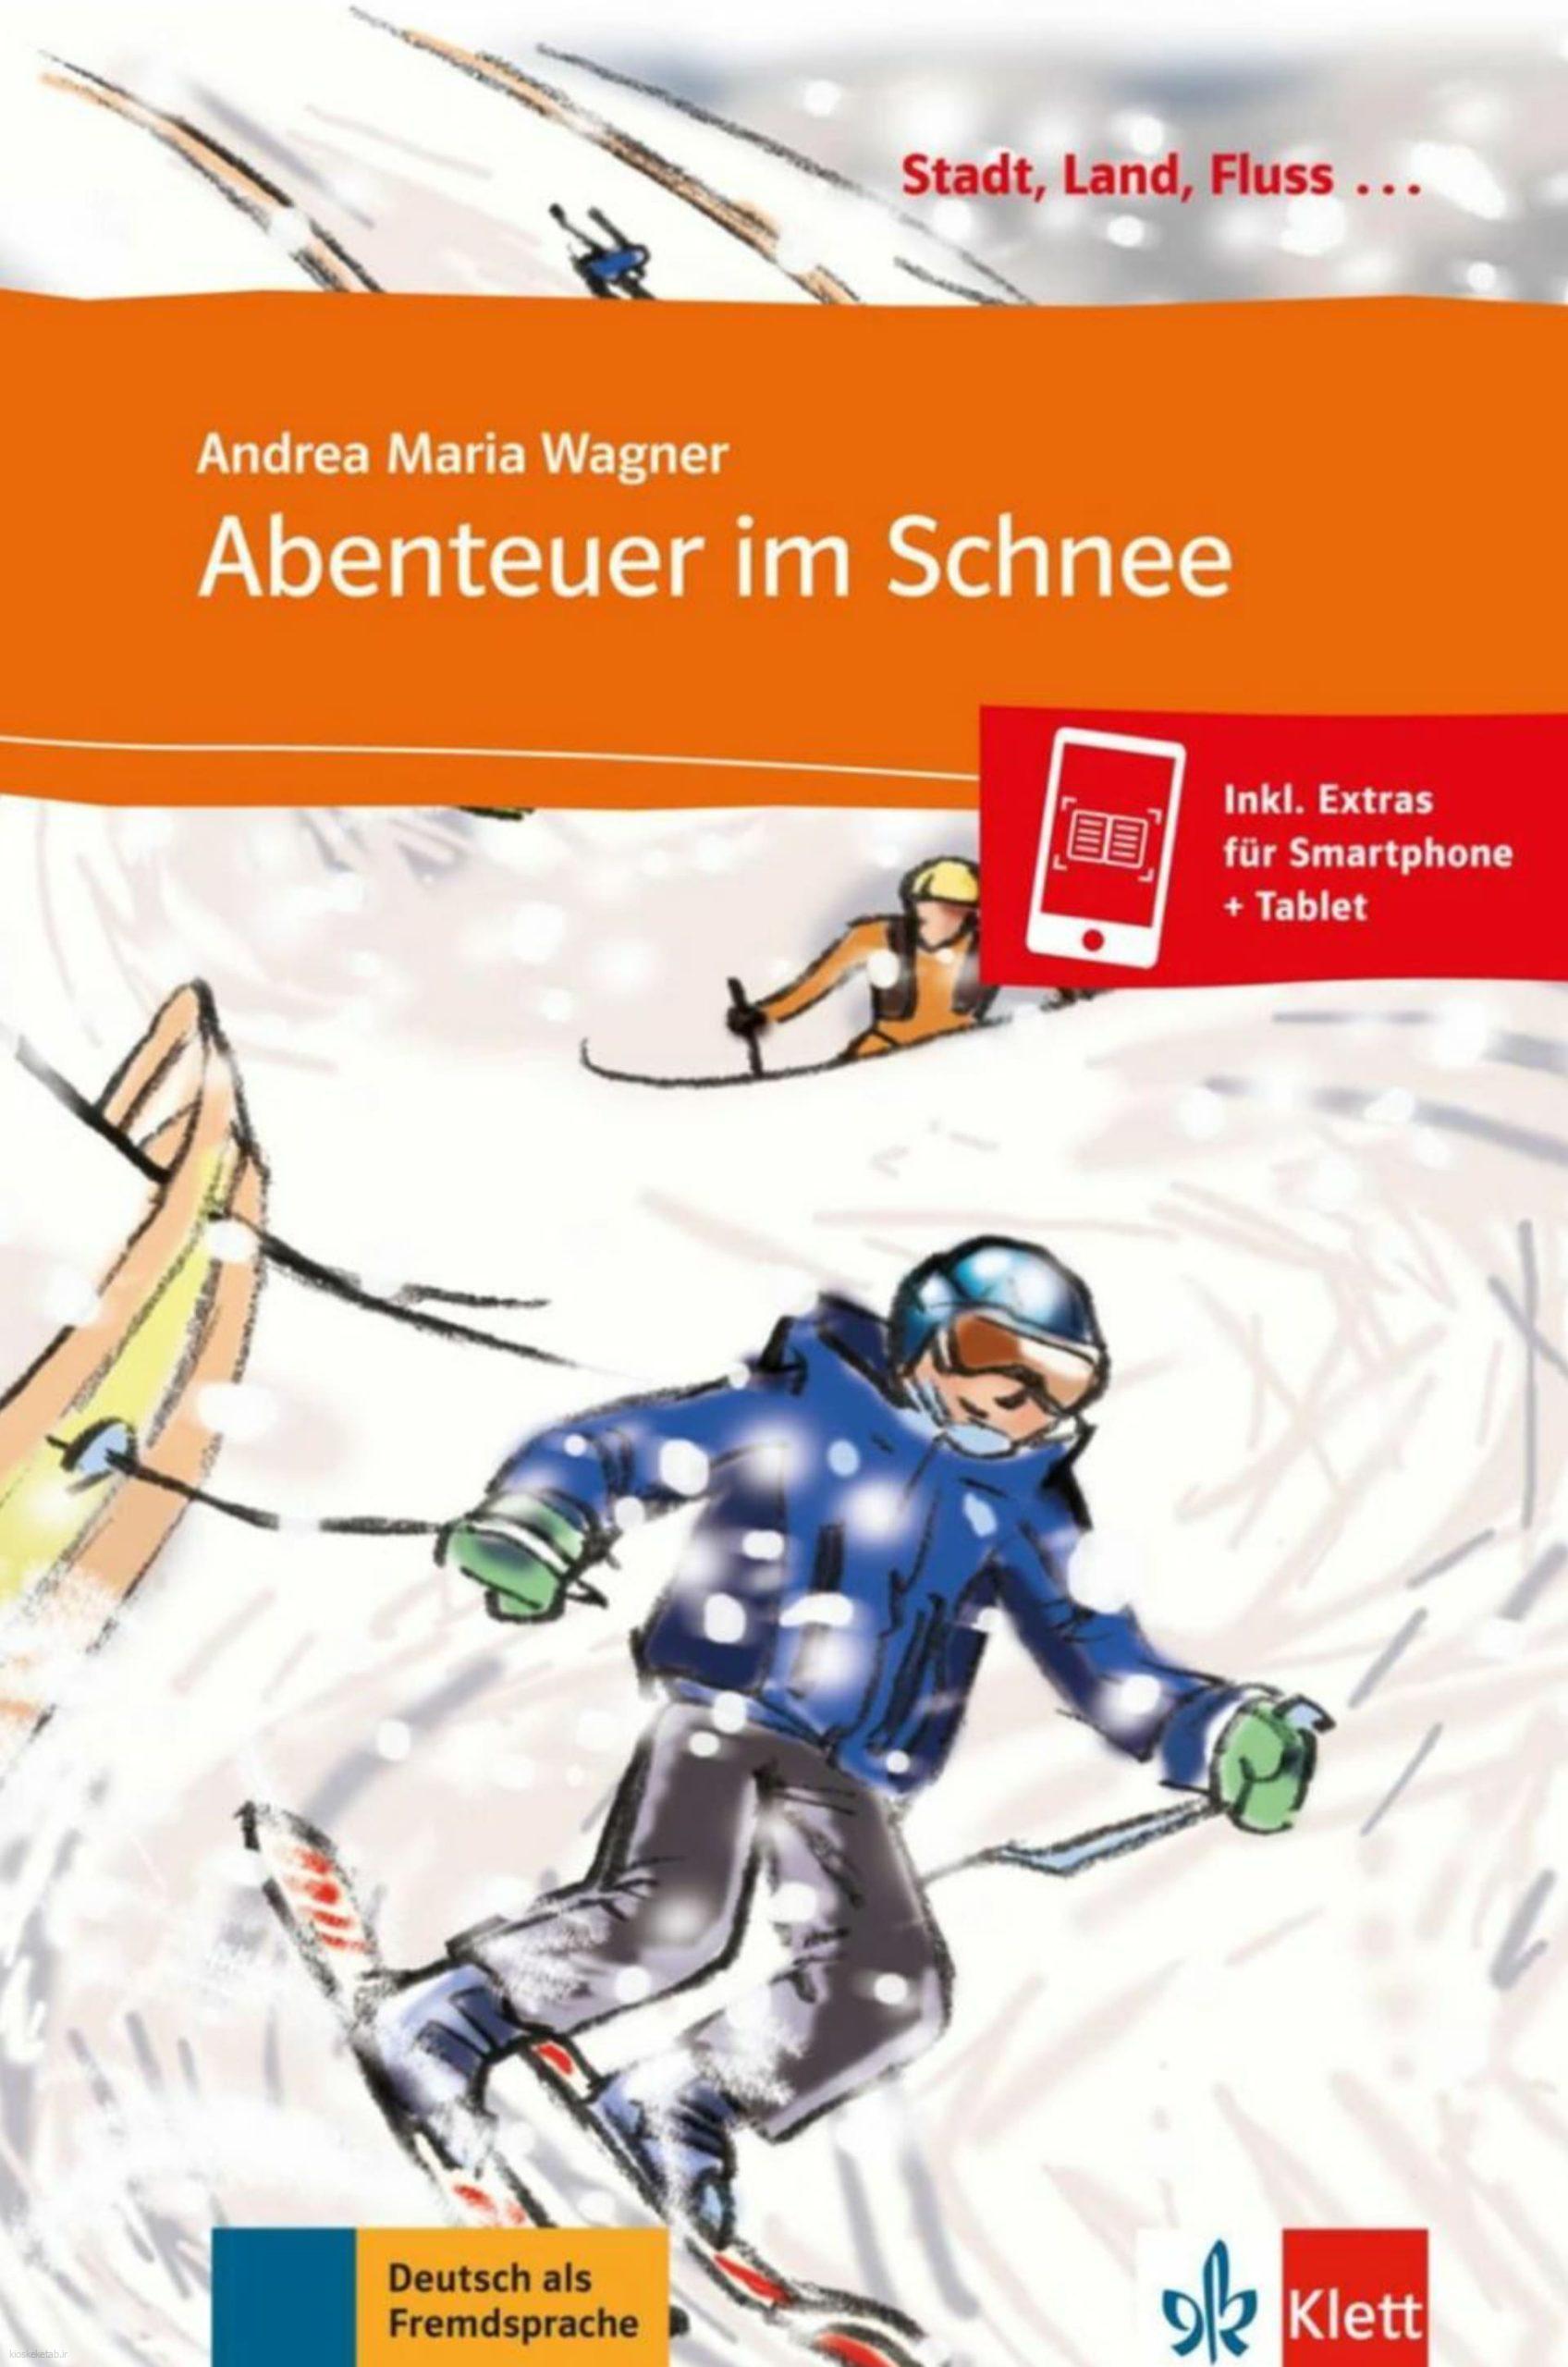 دانلود کتاب آلمانیabenteuer im schnee